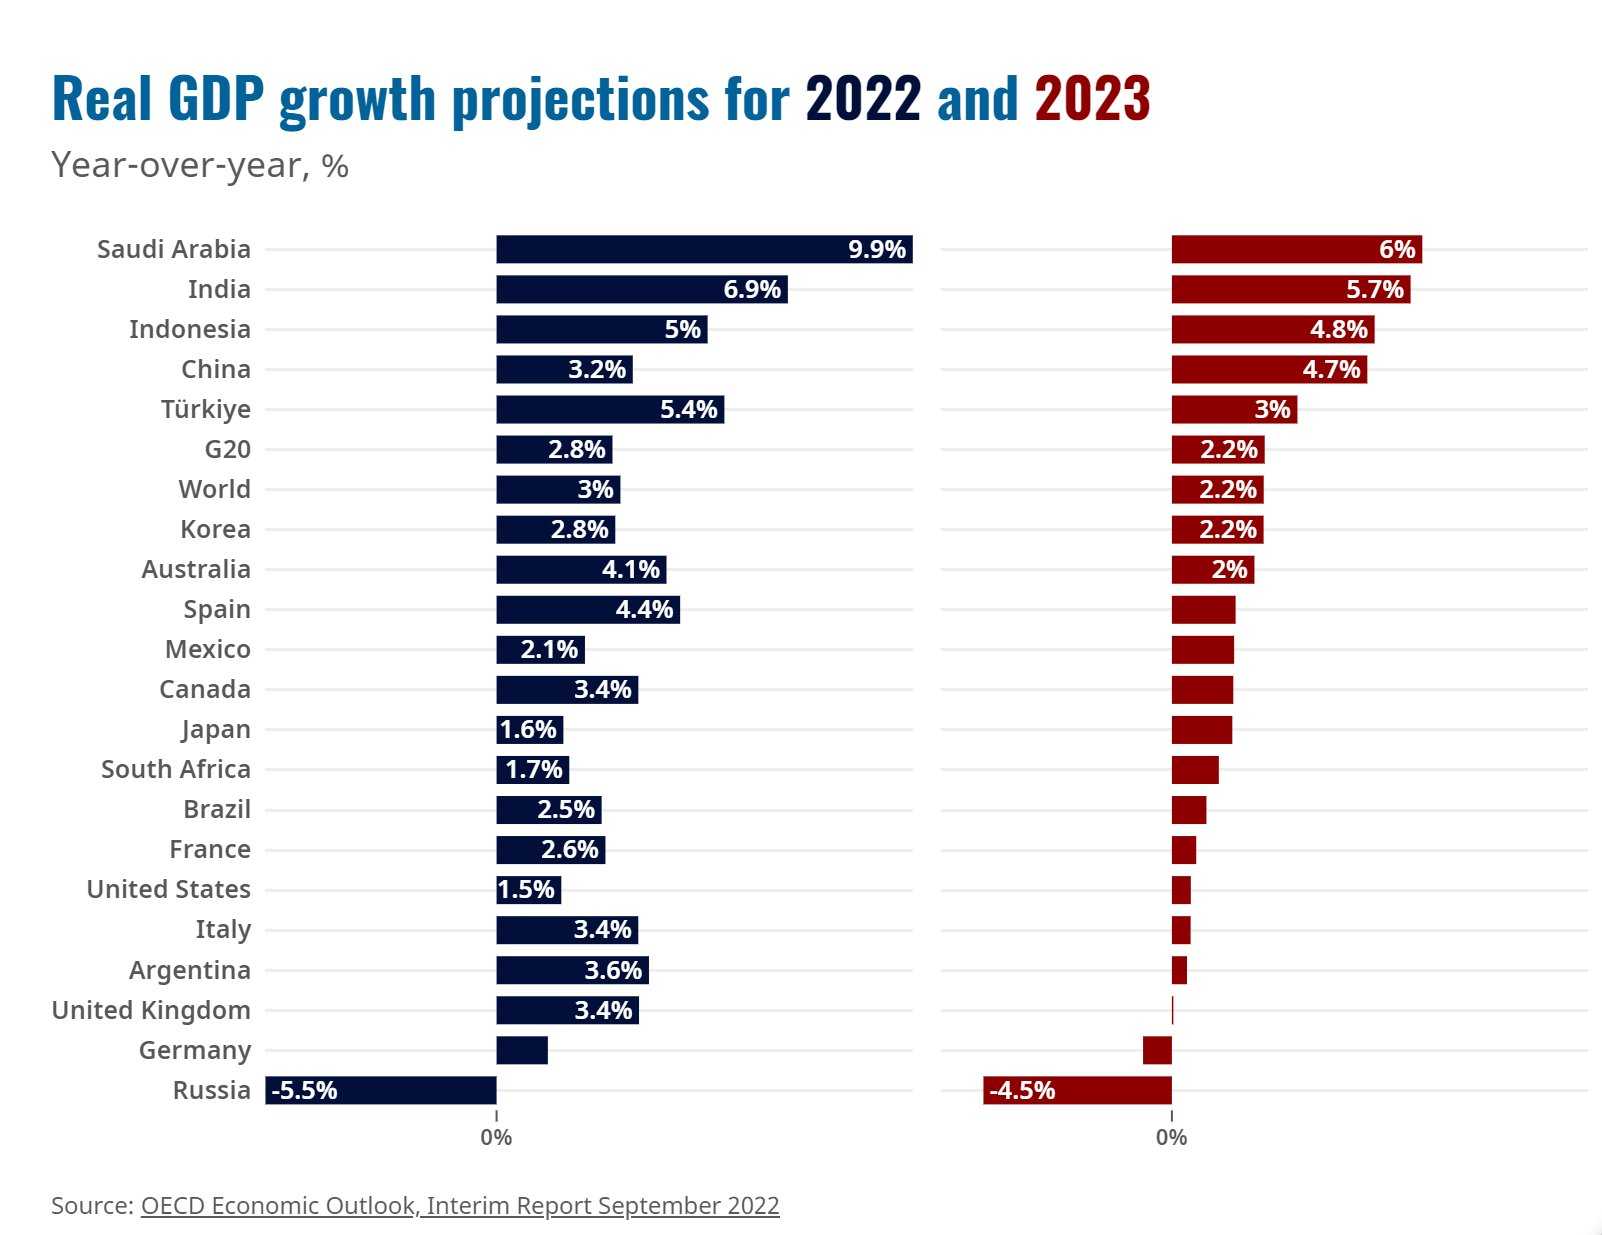 Экономика европы 2023